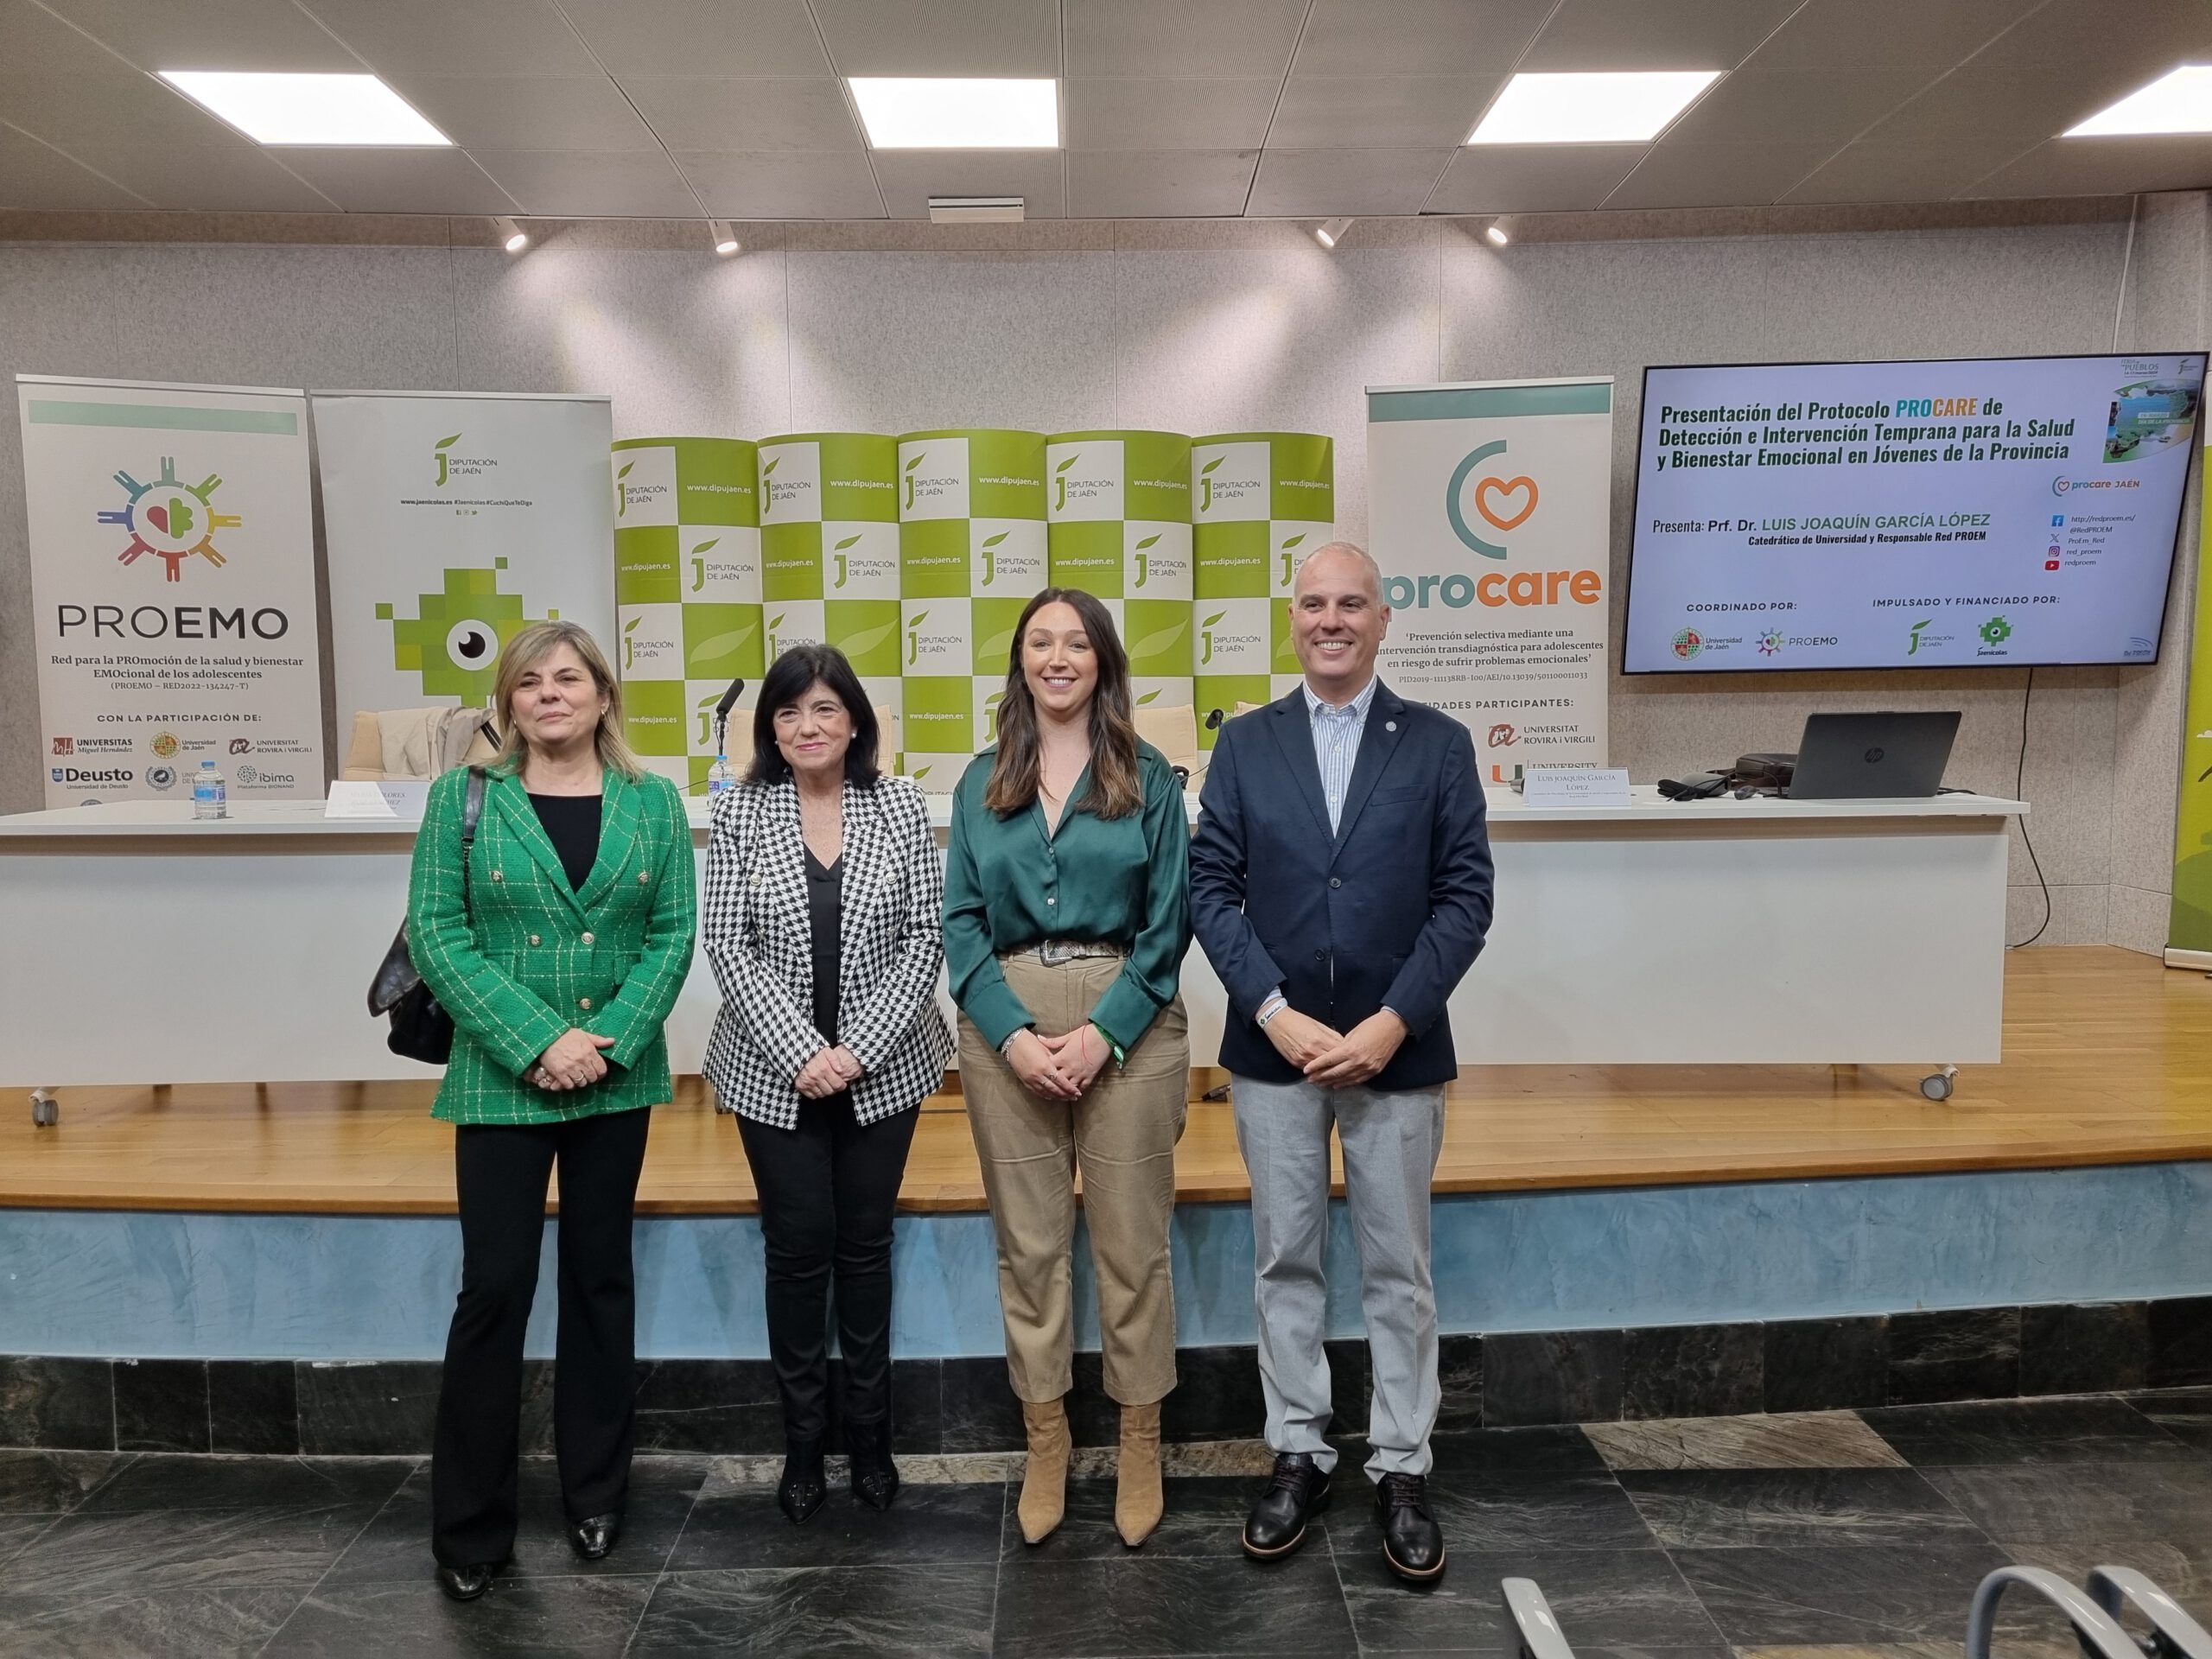 La Universidad de Jaén y la Red PROEMO implementarán la iniciativa PROCARE para mejorar la salud y el bienestar emocional de los adolescentes de la provincia de Jaén